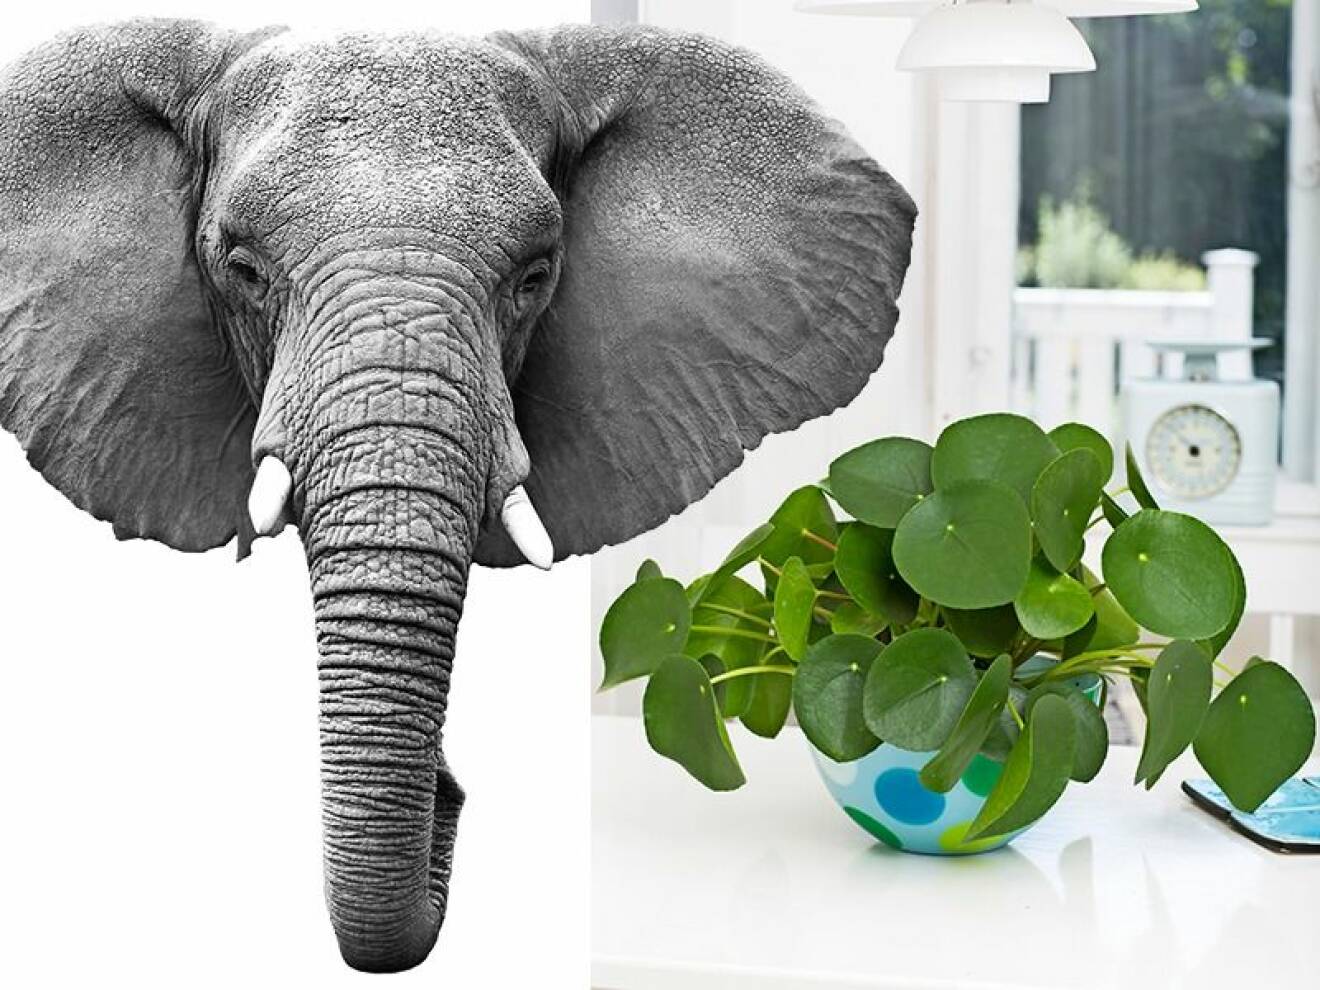 Krukväxten elefantöra har fått sitt namn från, som ni kanske gissade, elefantens öron.